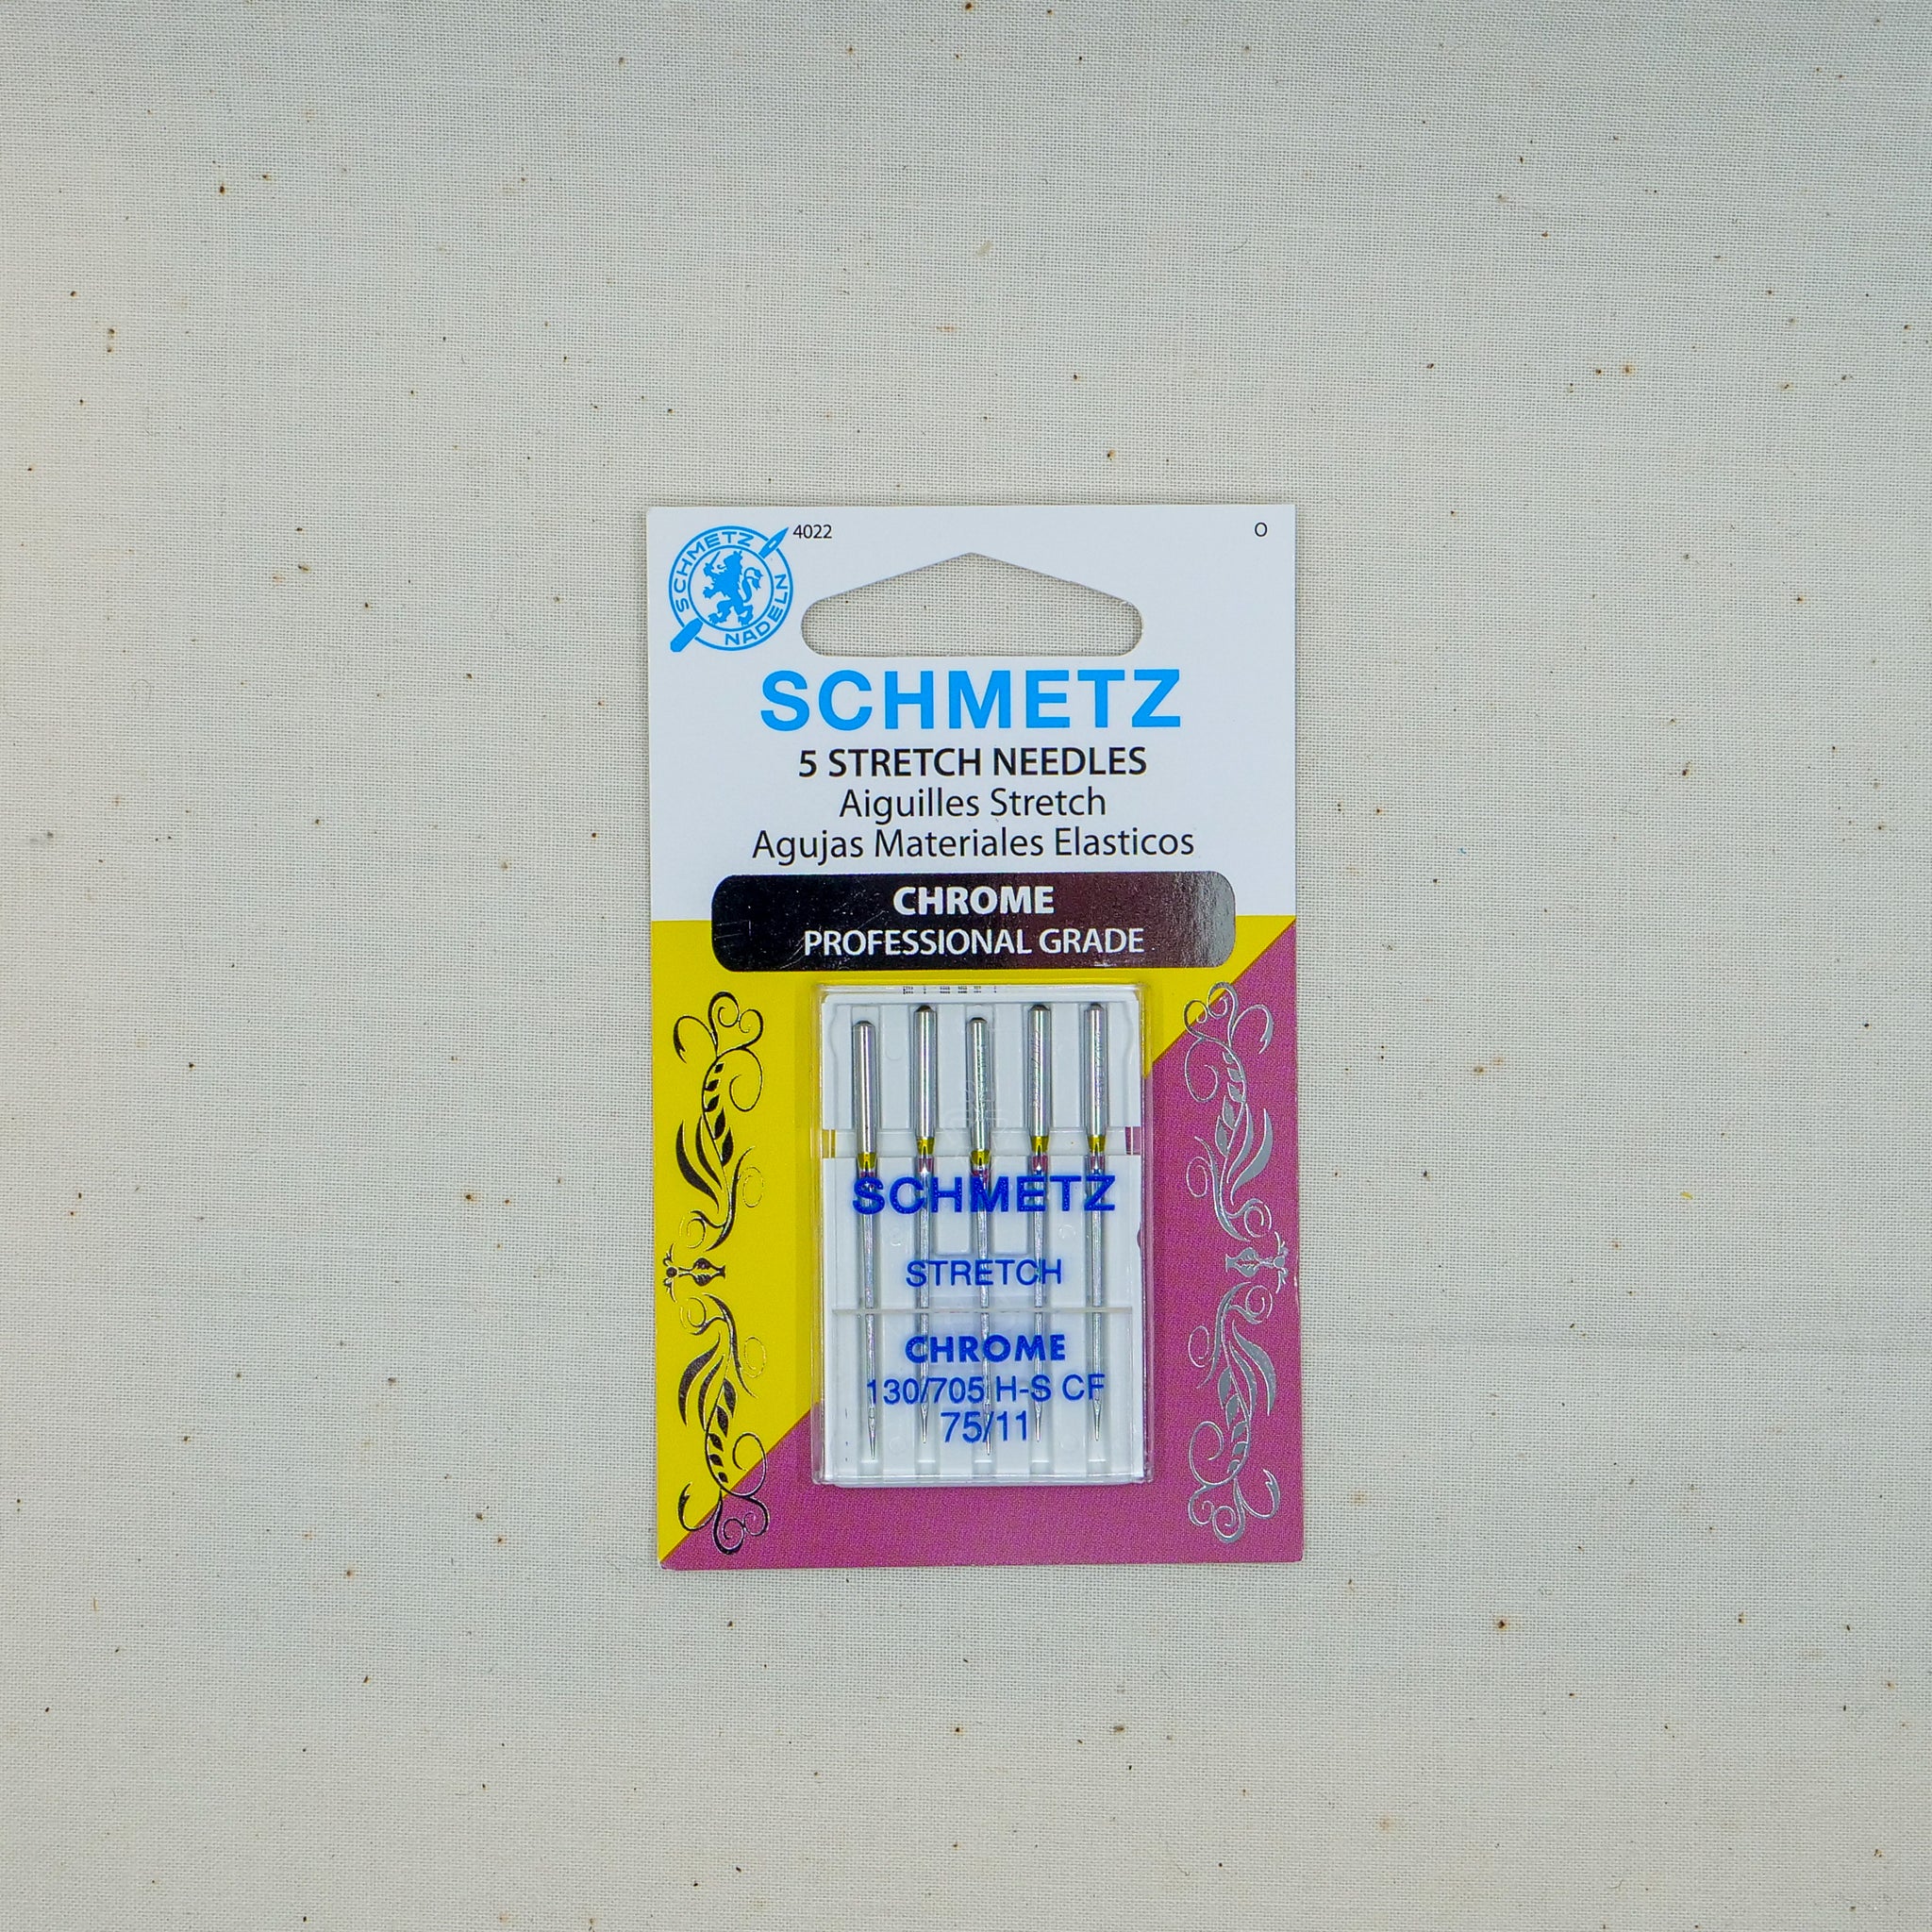 Schmetz Stretch Chrome 75/11